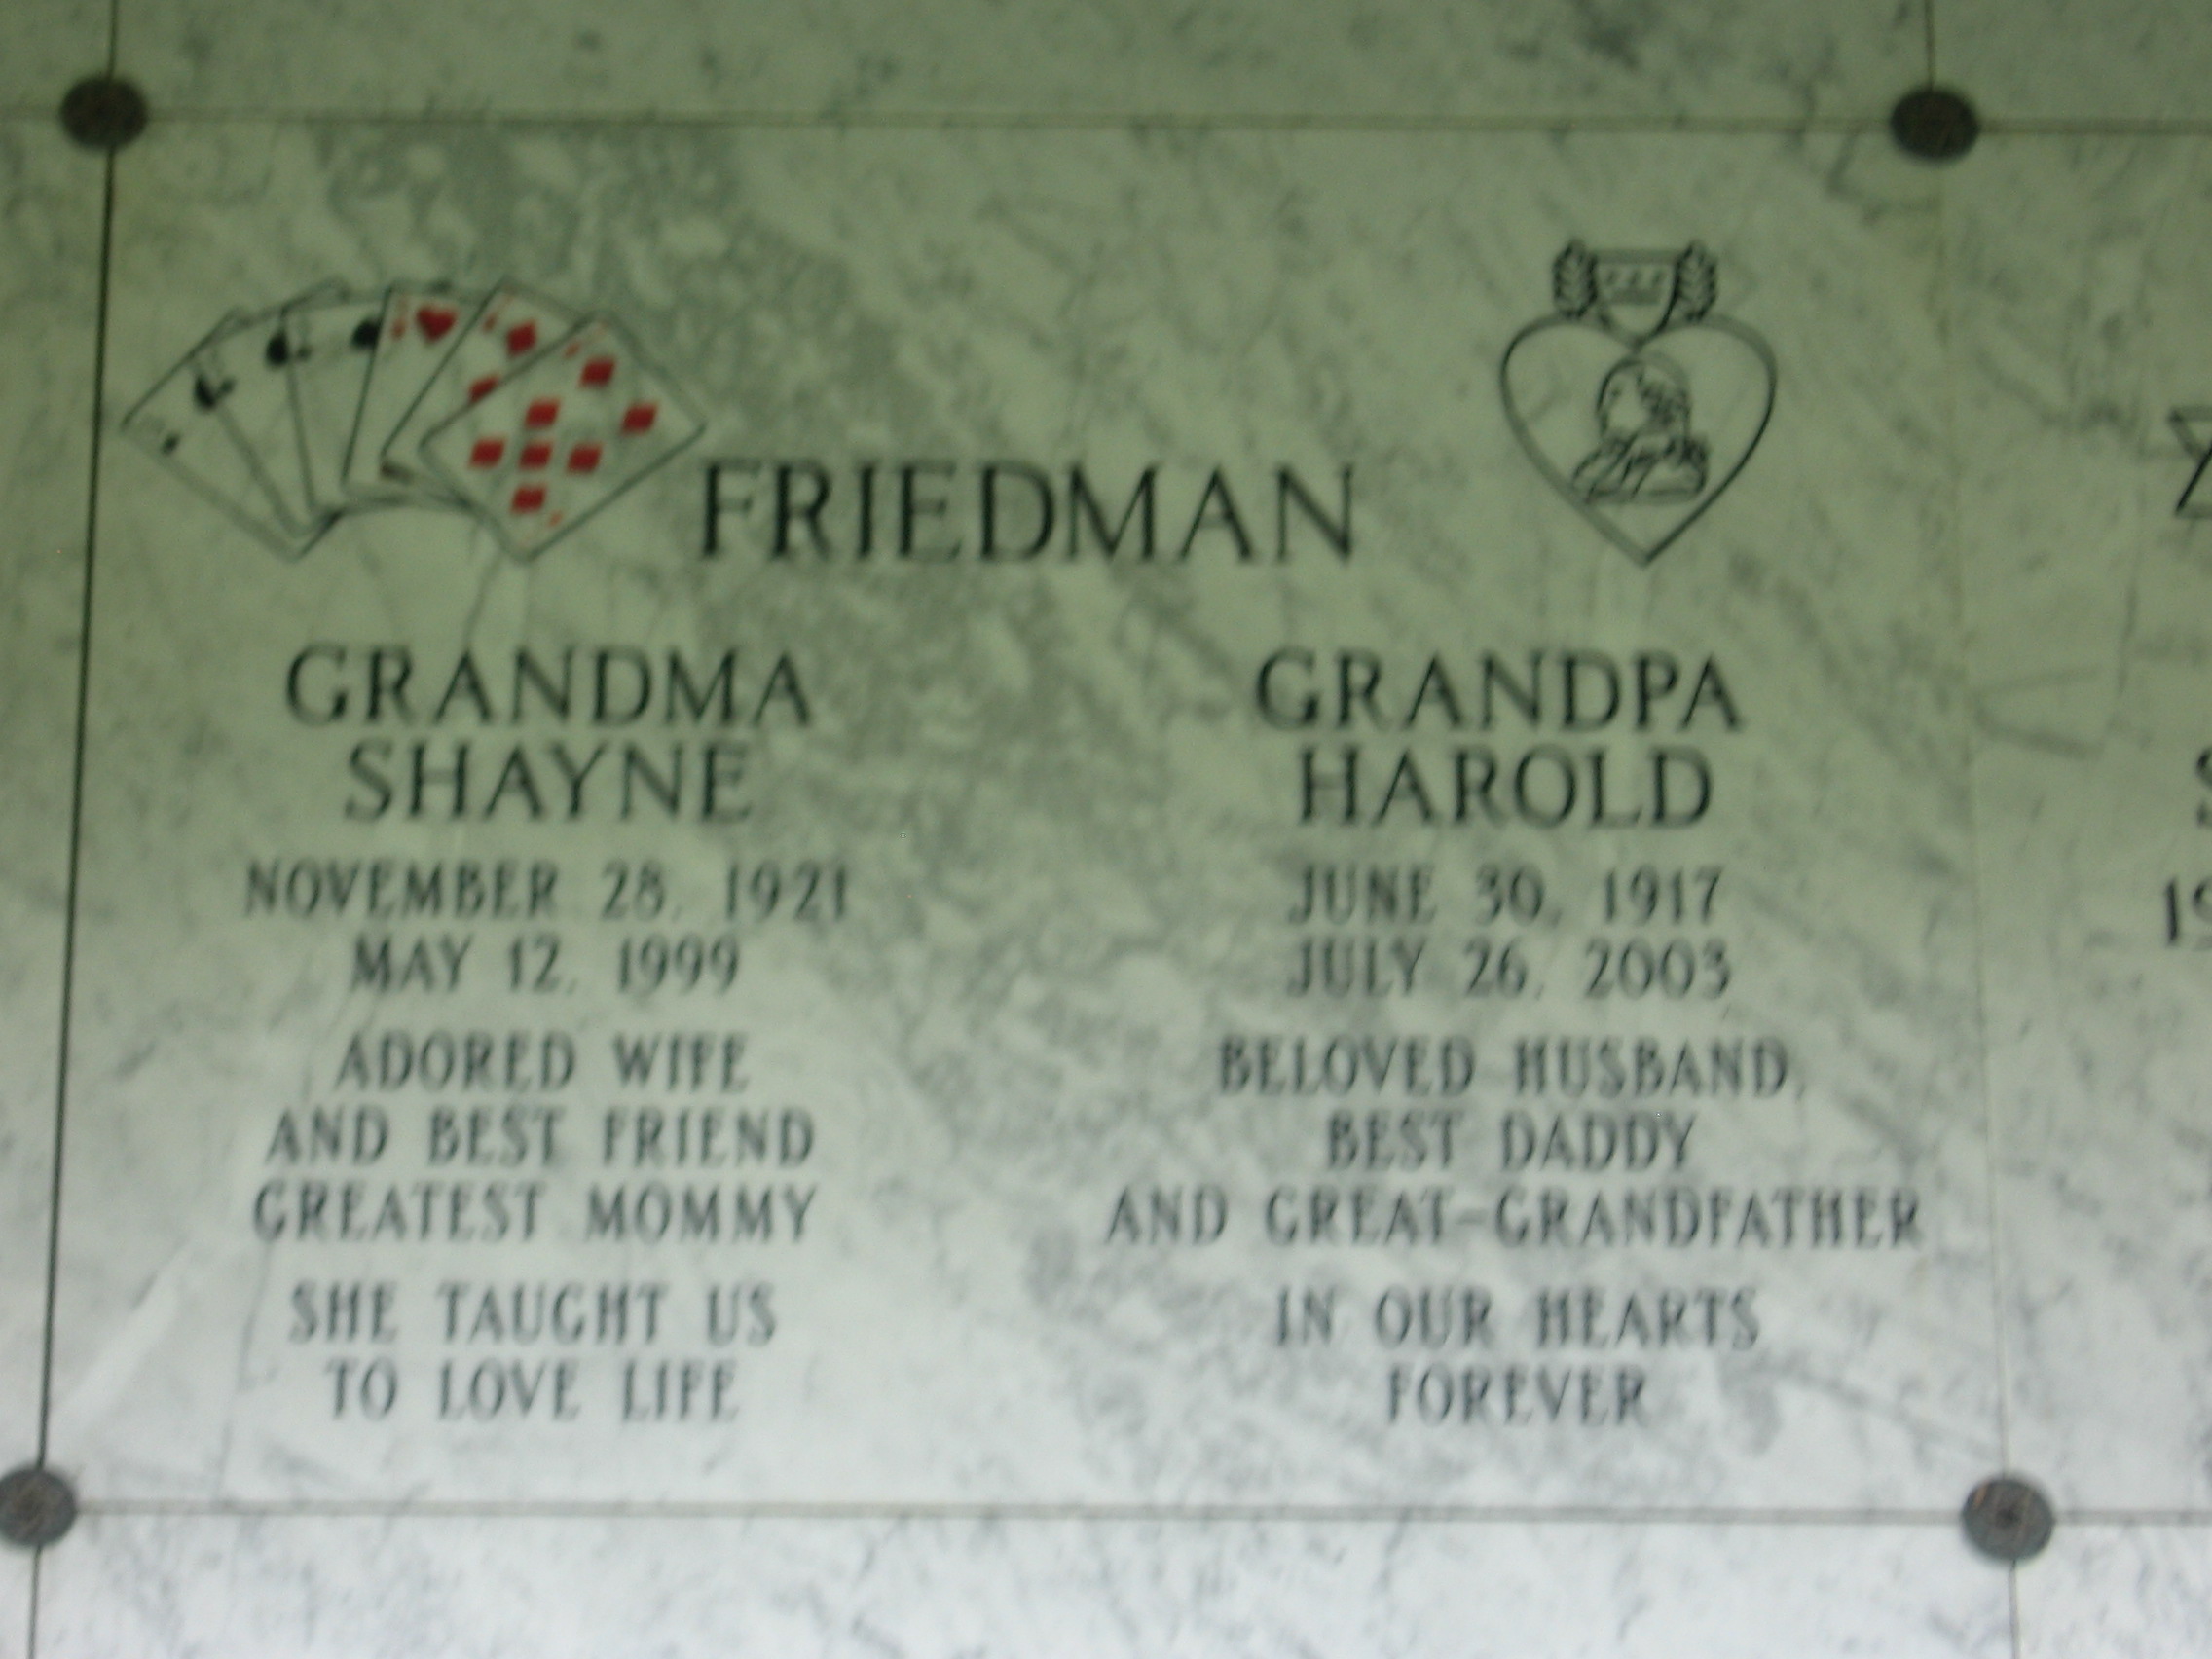 Shayne "Grandma" Friedman